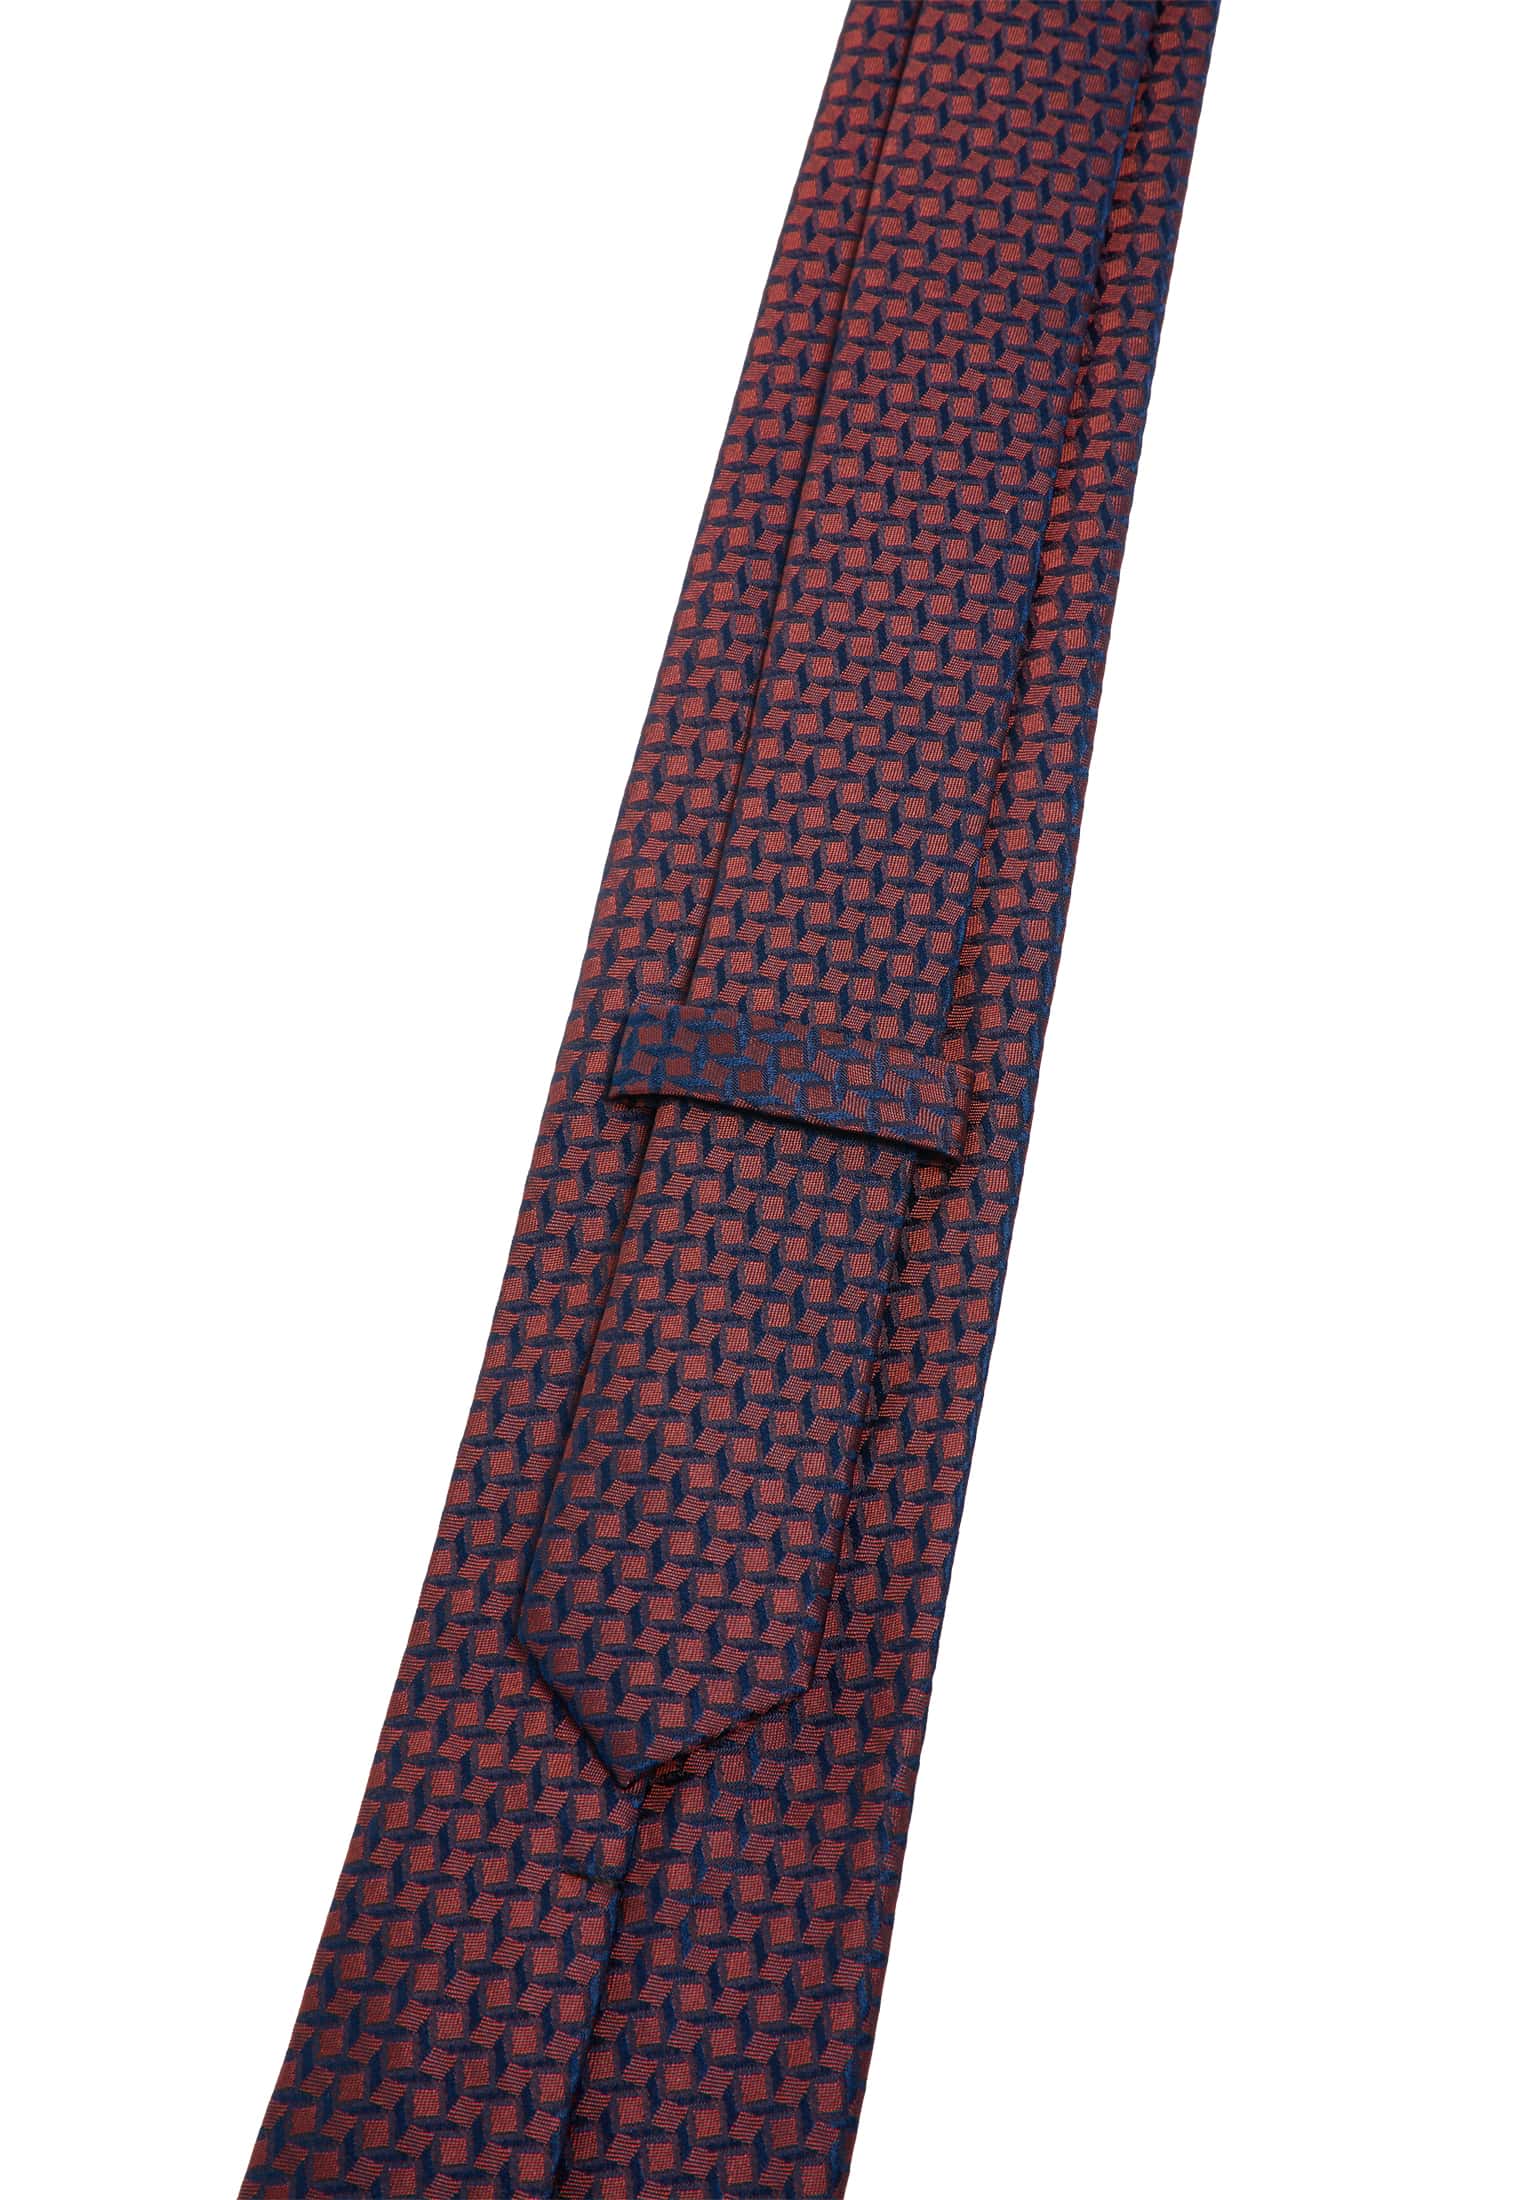 Krawatte in rot strukturiert 1AC01886-05-01-142 rot | 142 | 